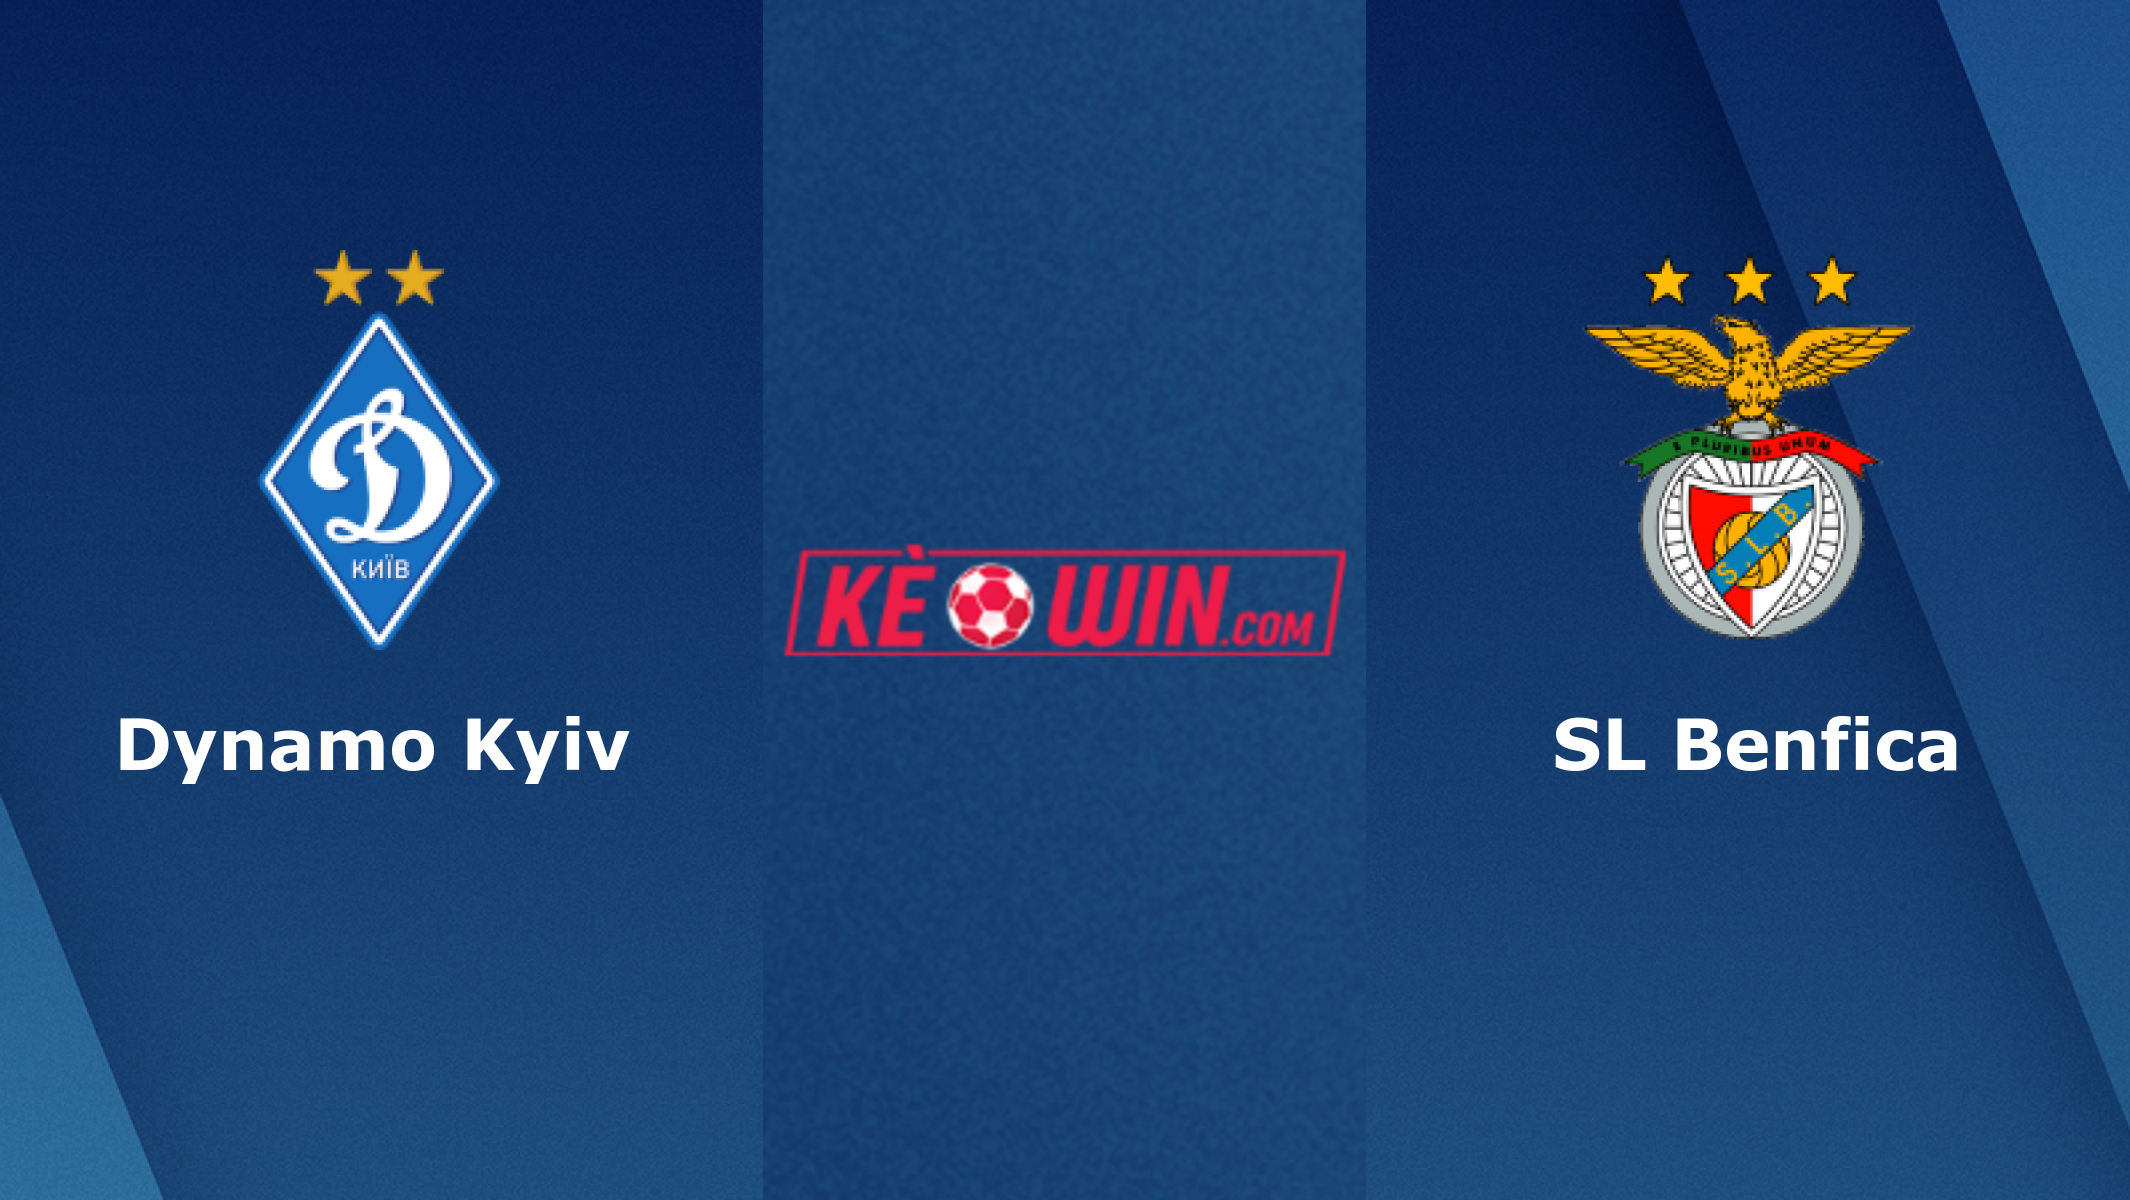 Dynamo Kyiv vs SL Benfica – Soi kèo bóng 02h00 18/08/2022 – UEFA Champions League